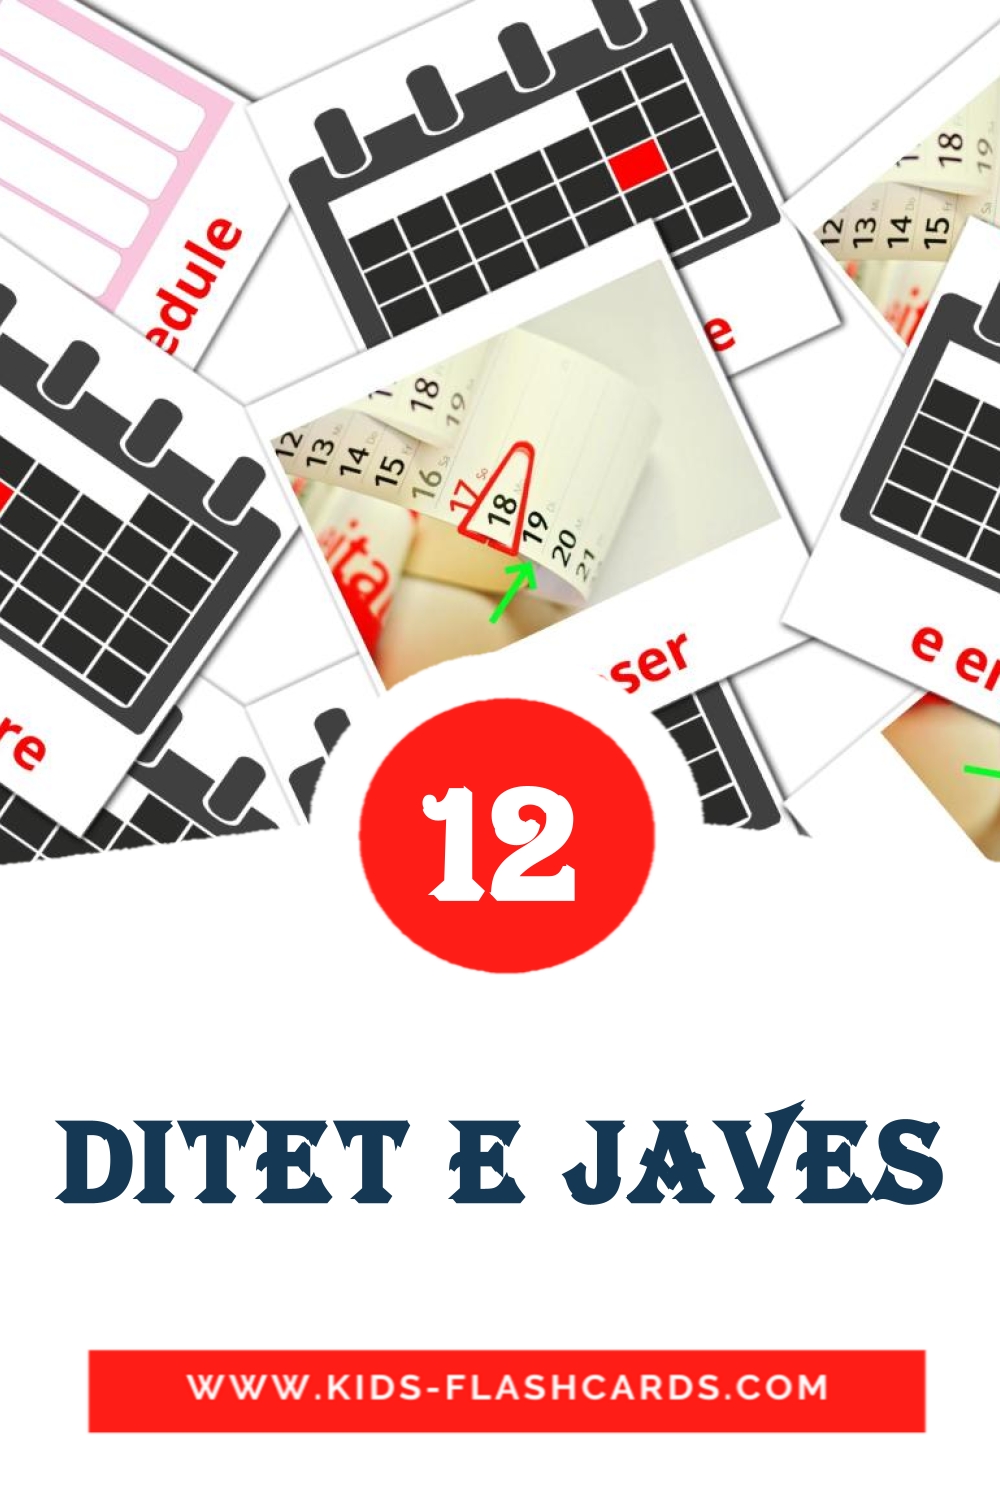 12 tarjetas didacticas de Ditet e javes para el jardín de infancia en albanés